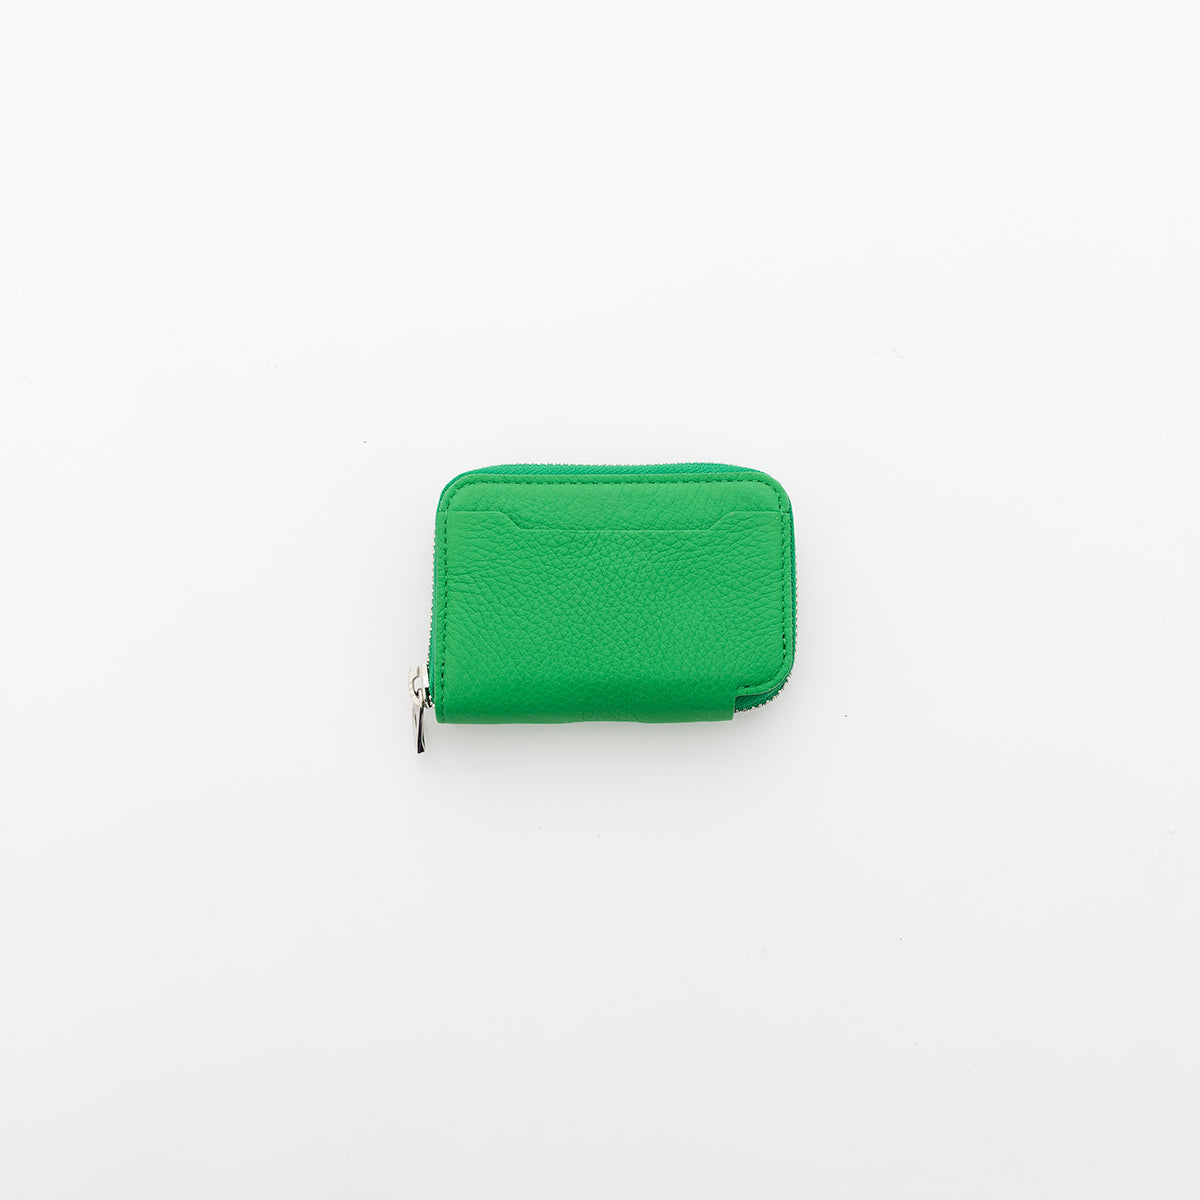 ITTI (イッチ) | CRISTY COIN CARD WLT / 21Q3-4 (クリスティコインカードウォレット)本革 限定 リミテッド 緑 グリーン グラス ミニ財布 サイフ さいふ メンズ レディース キャッシュレス